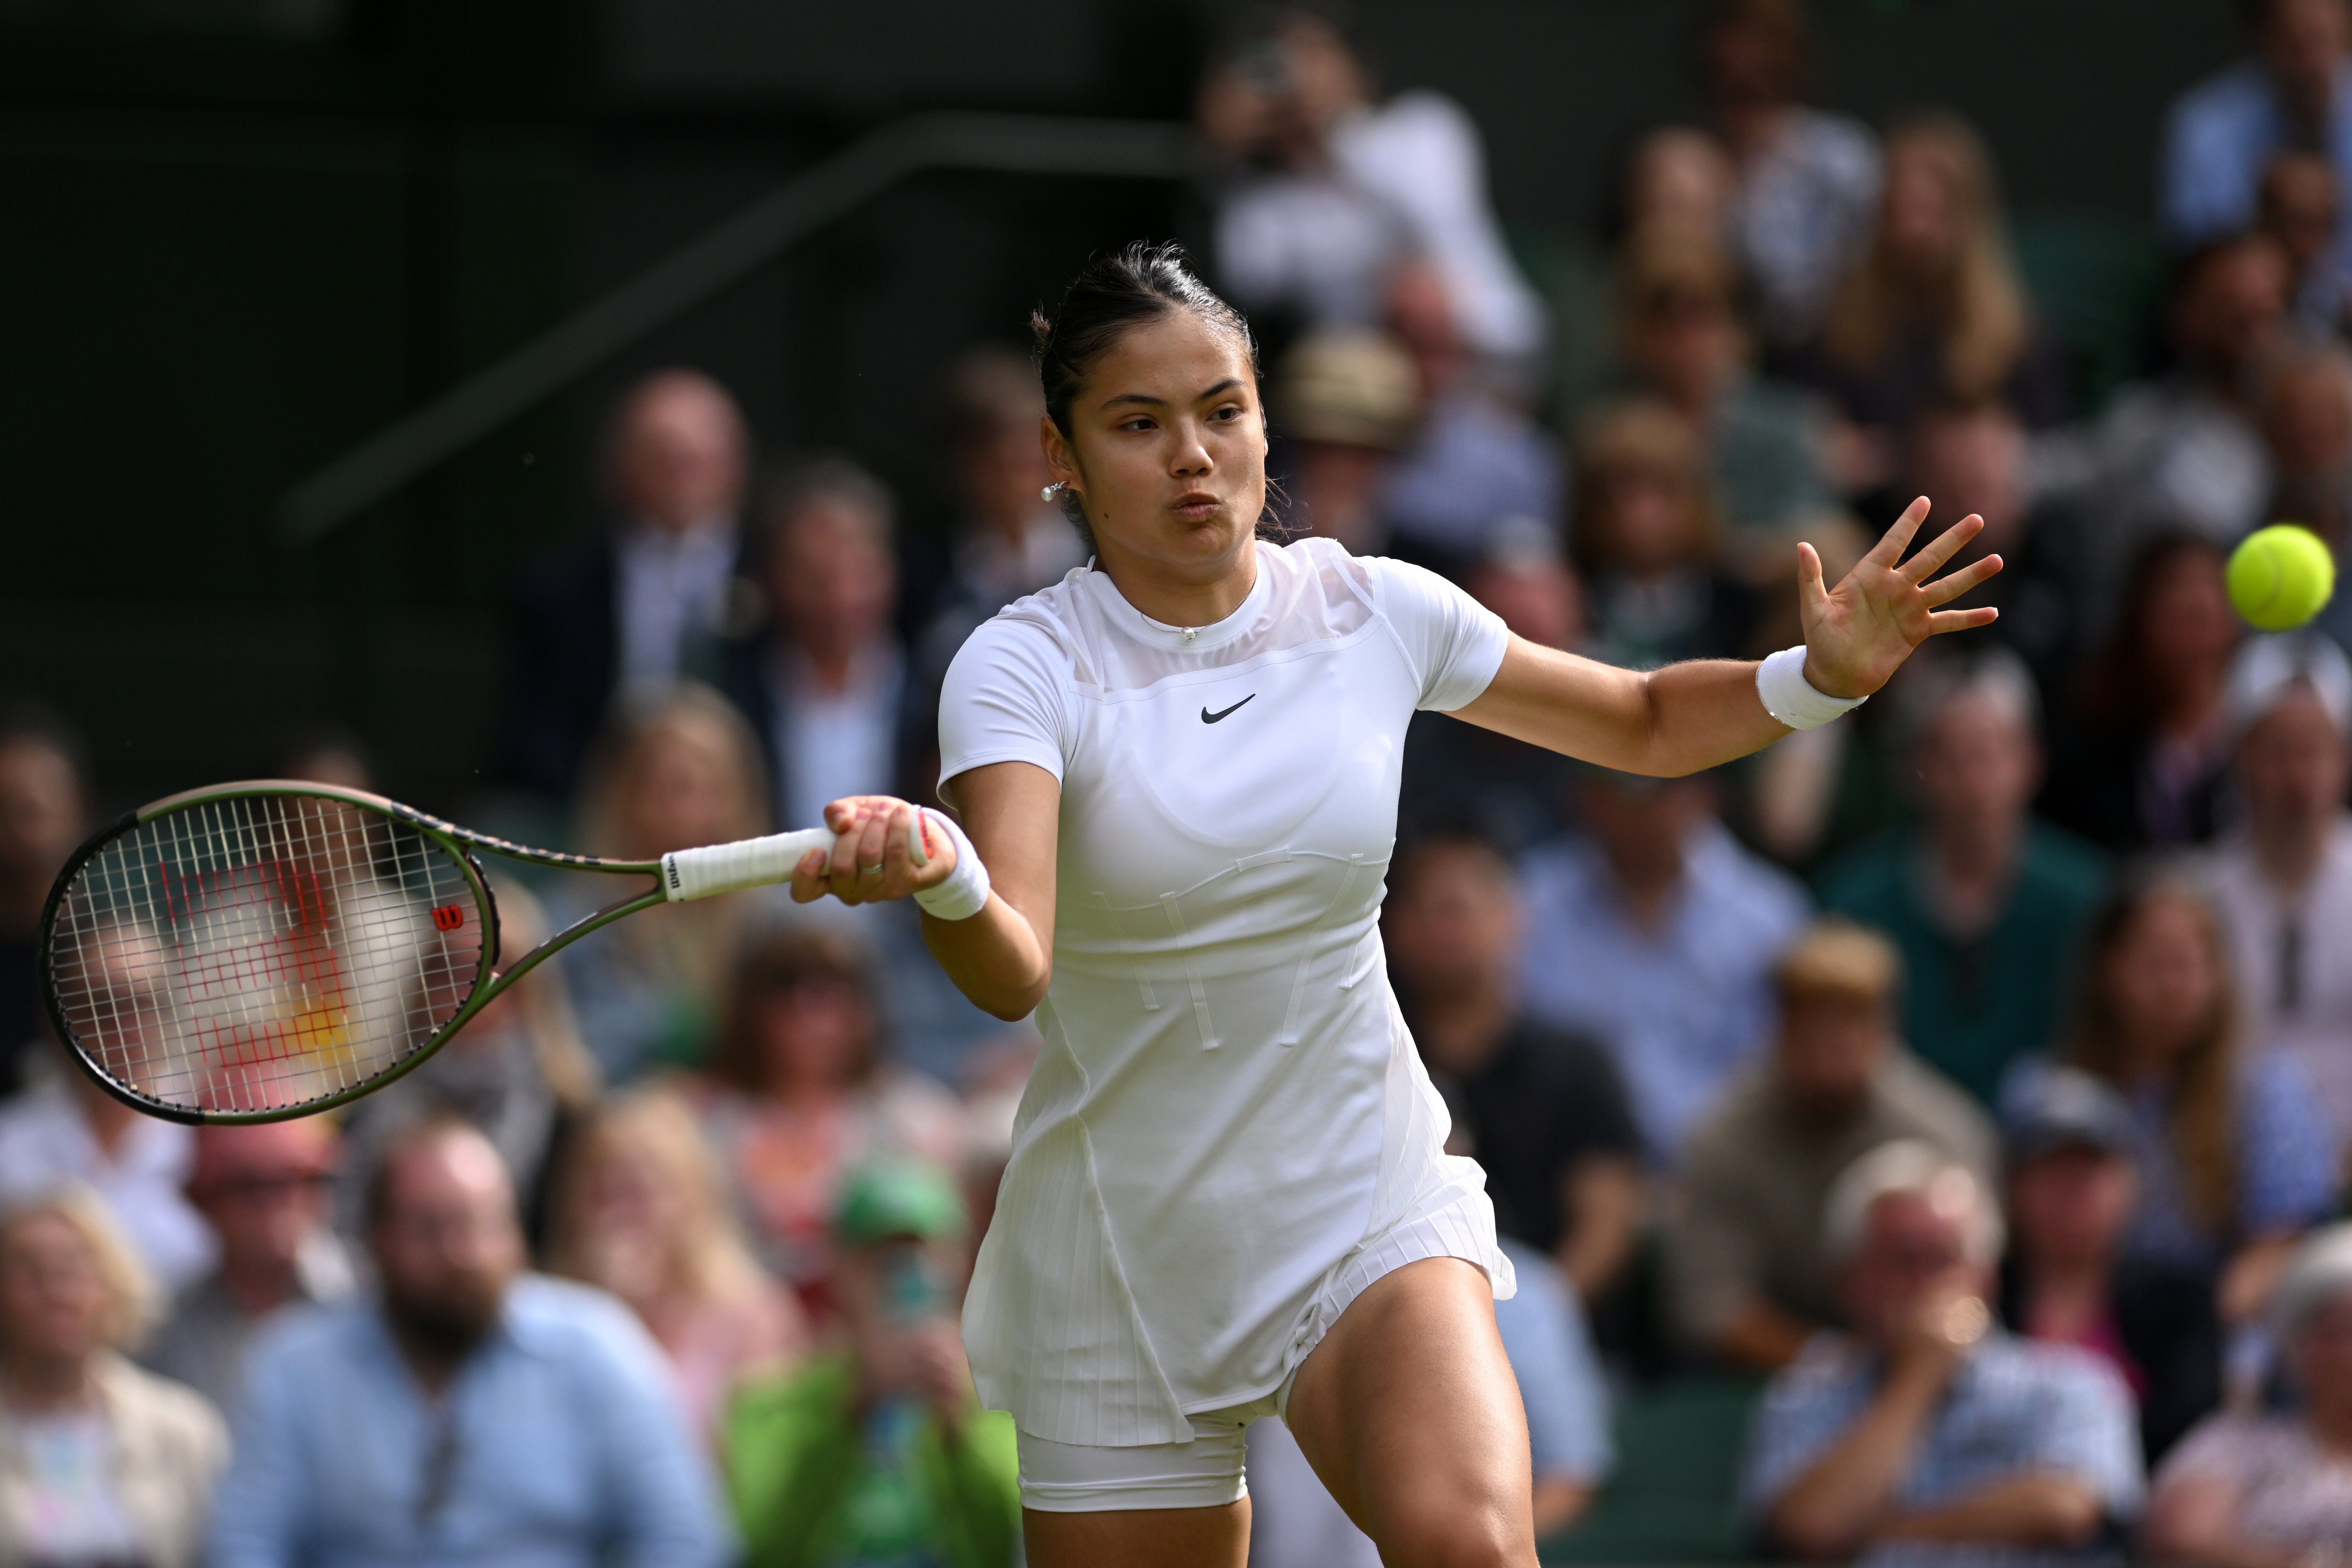 Emma Raducanu has not played at Wimbledon since 2022